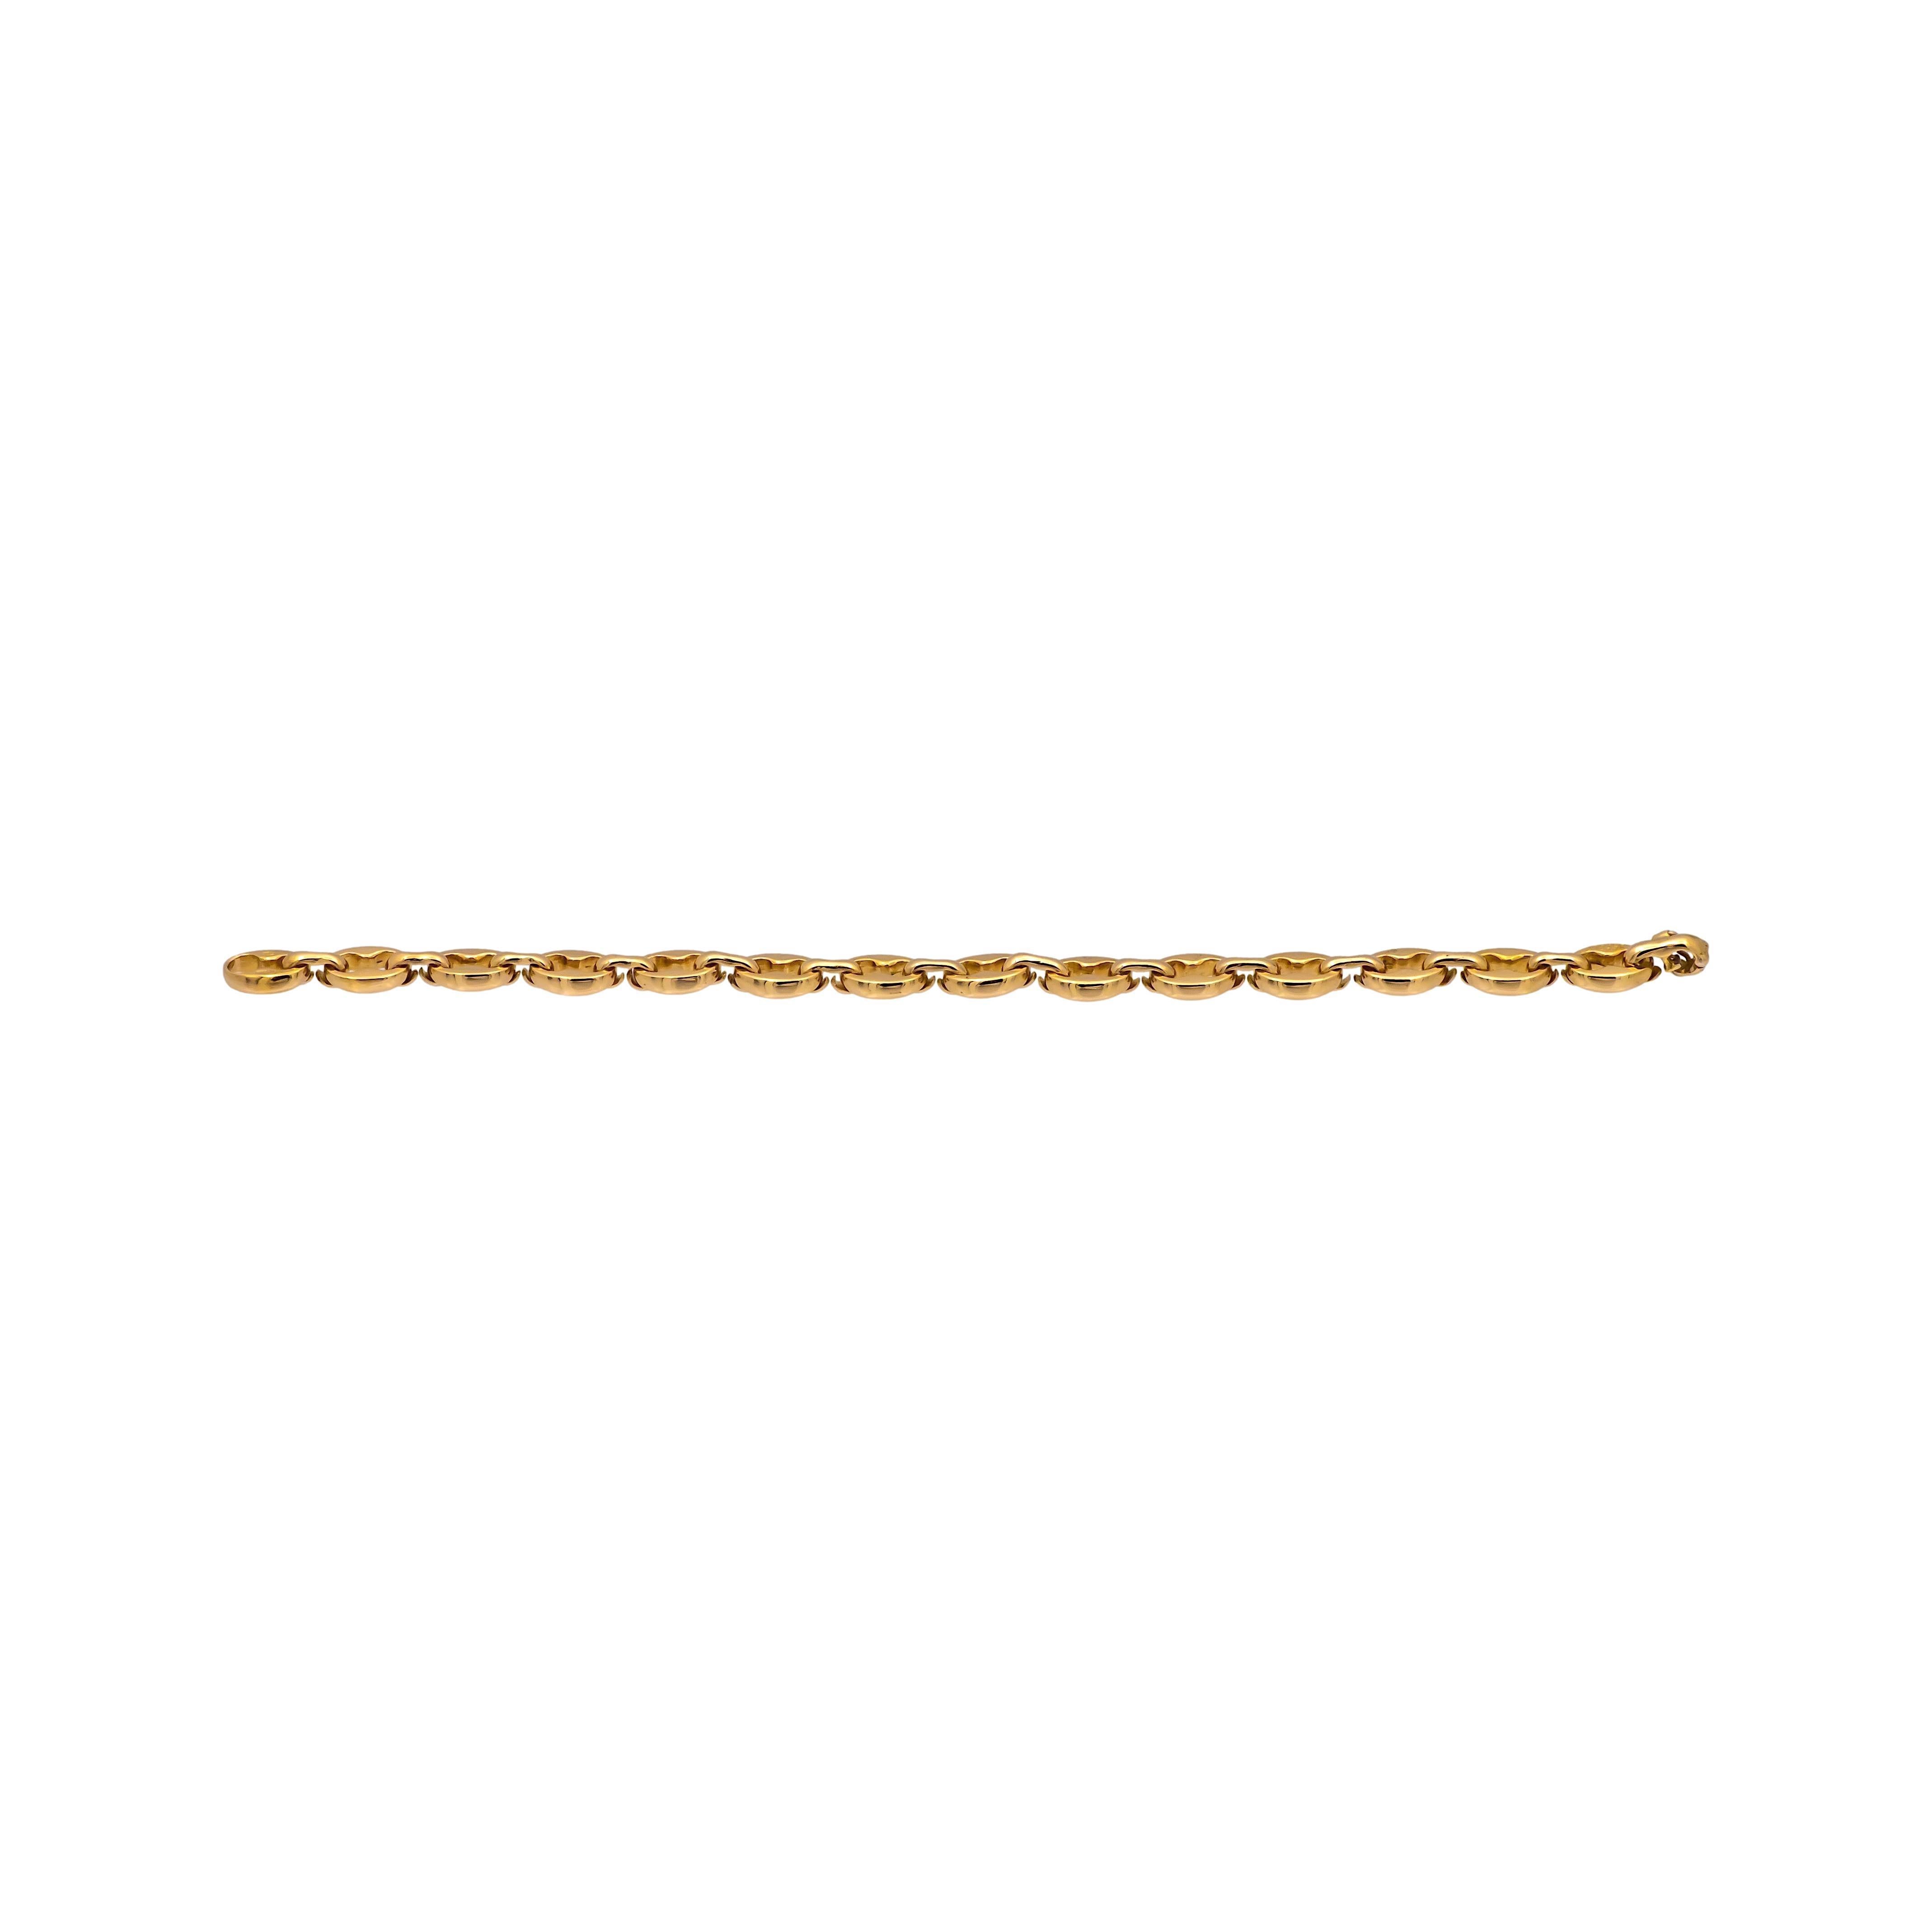 Vintage Cartier Armband aus 18 Karat Gelbgold mit offenen, ineinandergreifenden Krallen und Bohnengliedern. Das Armband ist 7